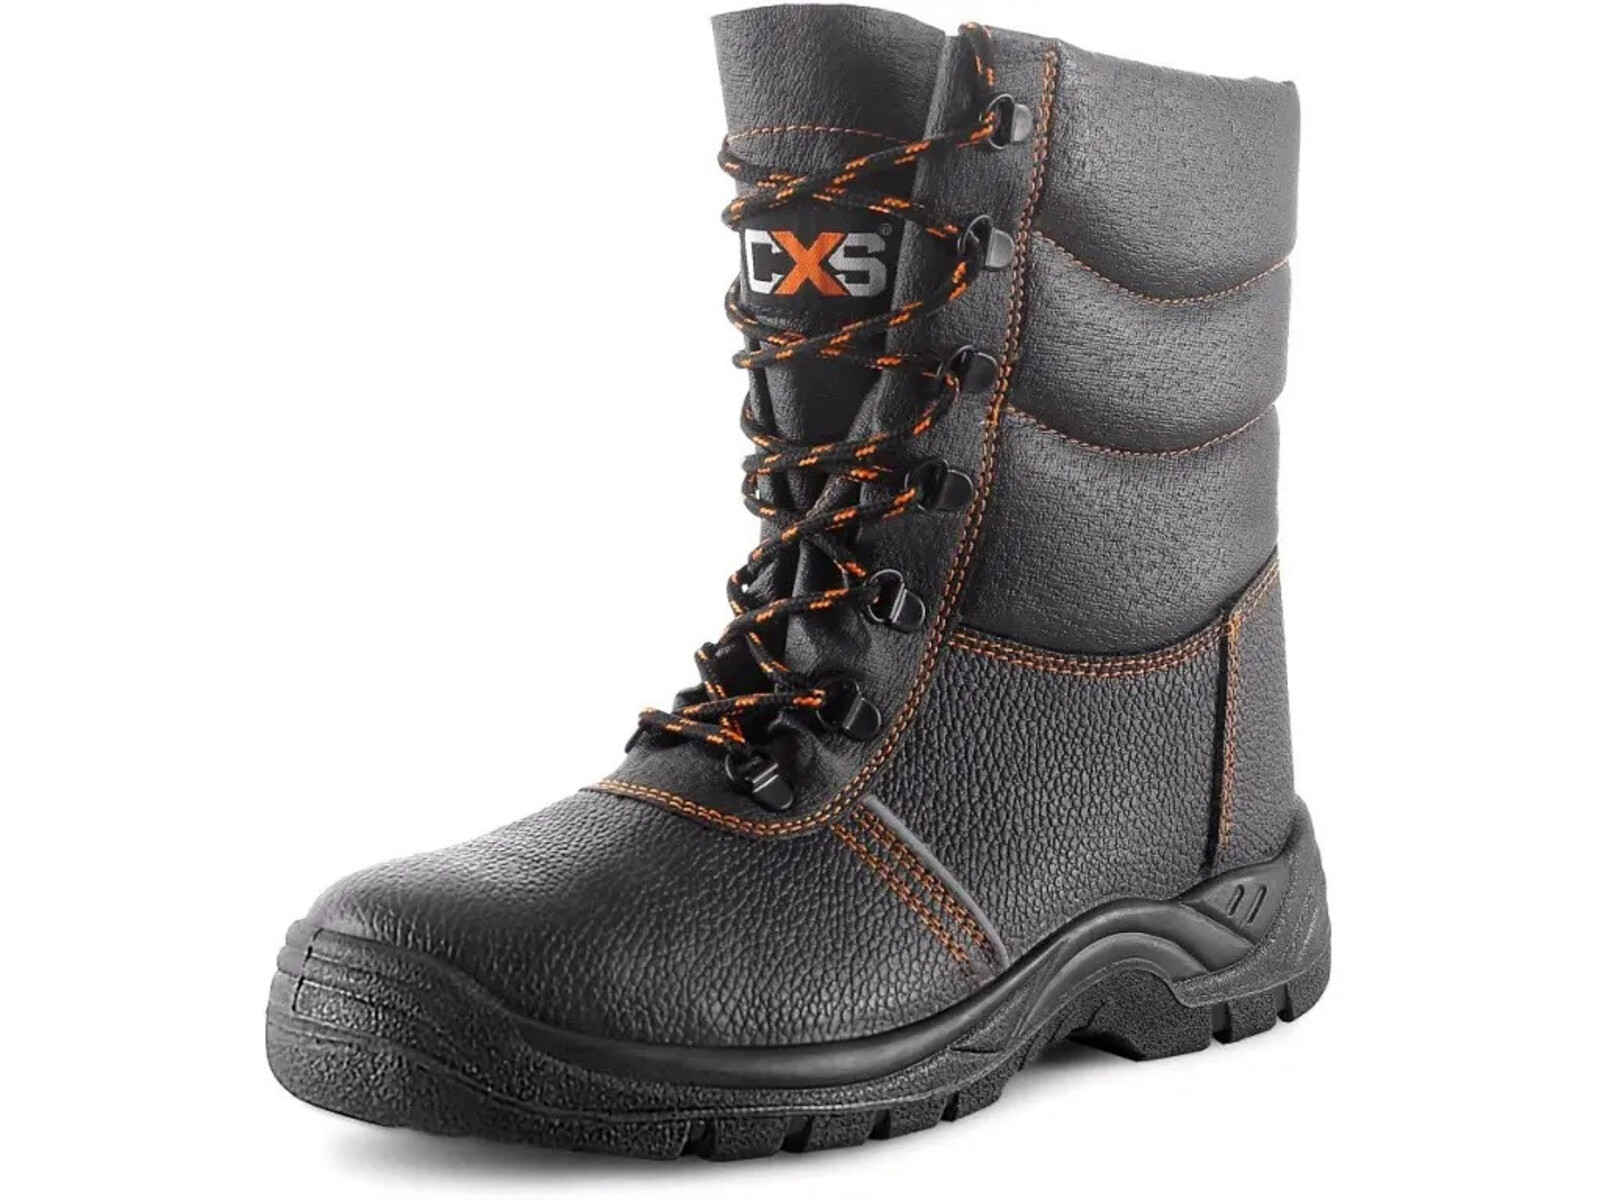 Zimná bezpečnostná poloholeňová obuv CXS Stone Topaz Winter S3 SRC - veľkosť: 45, farba: čierna/oranžová